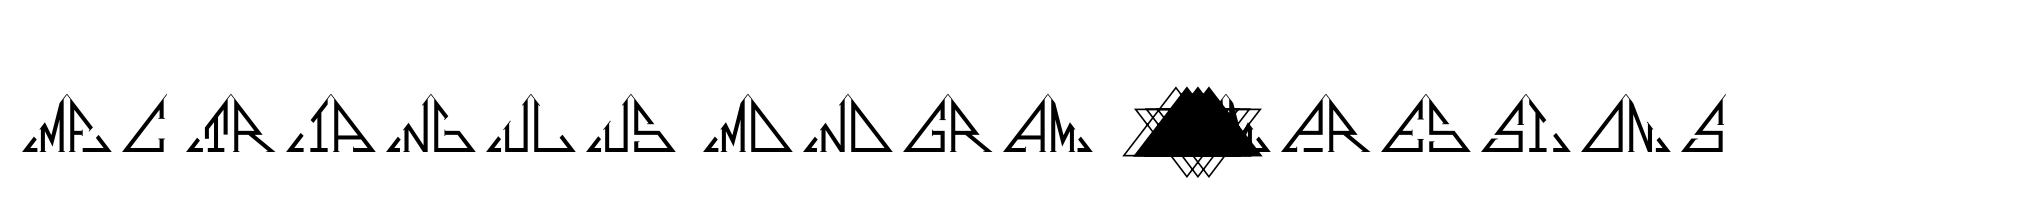 MFC Triangulus Monogram 1000 Impressions image